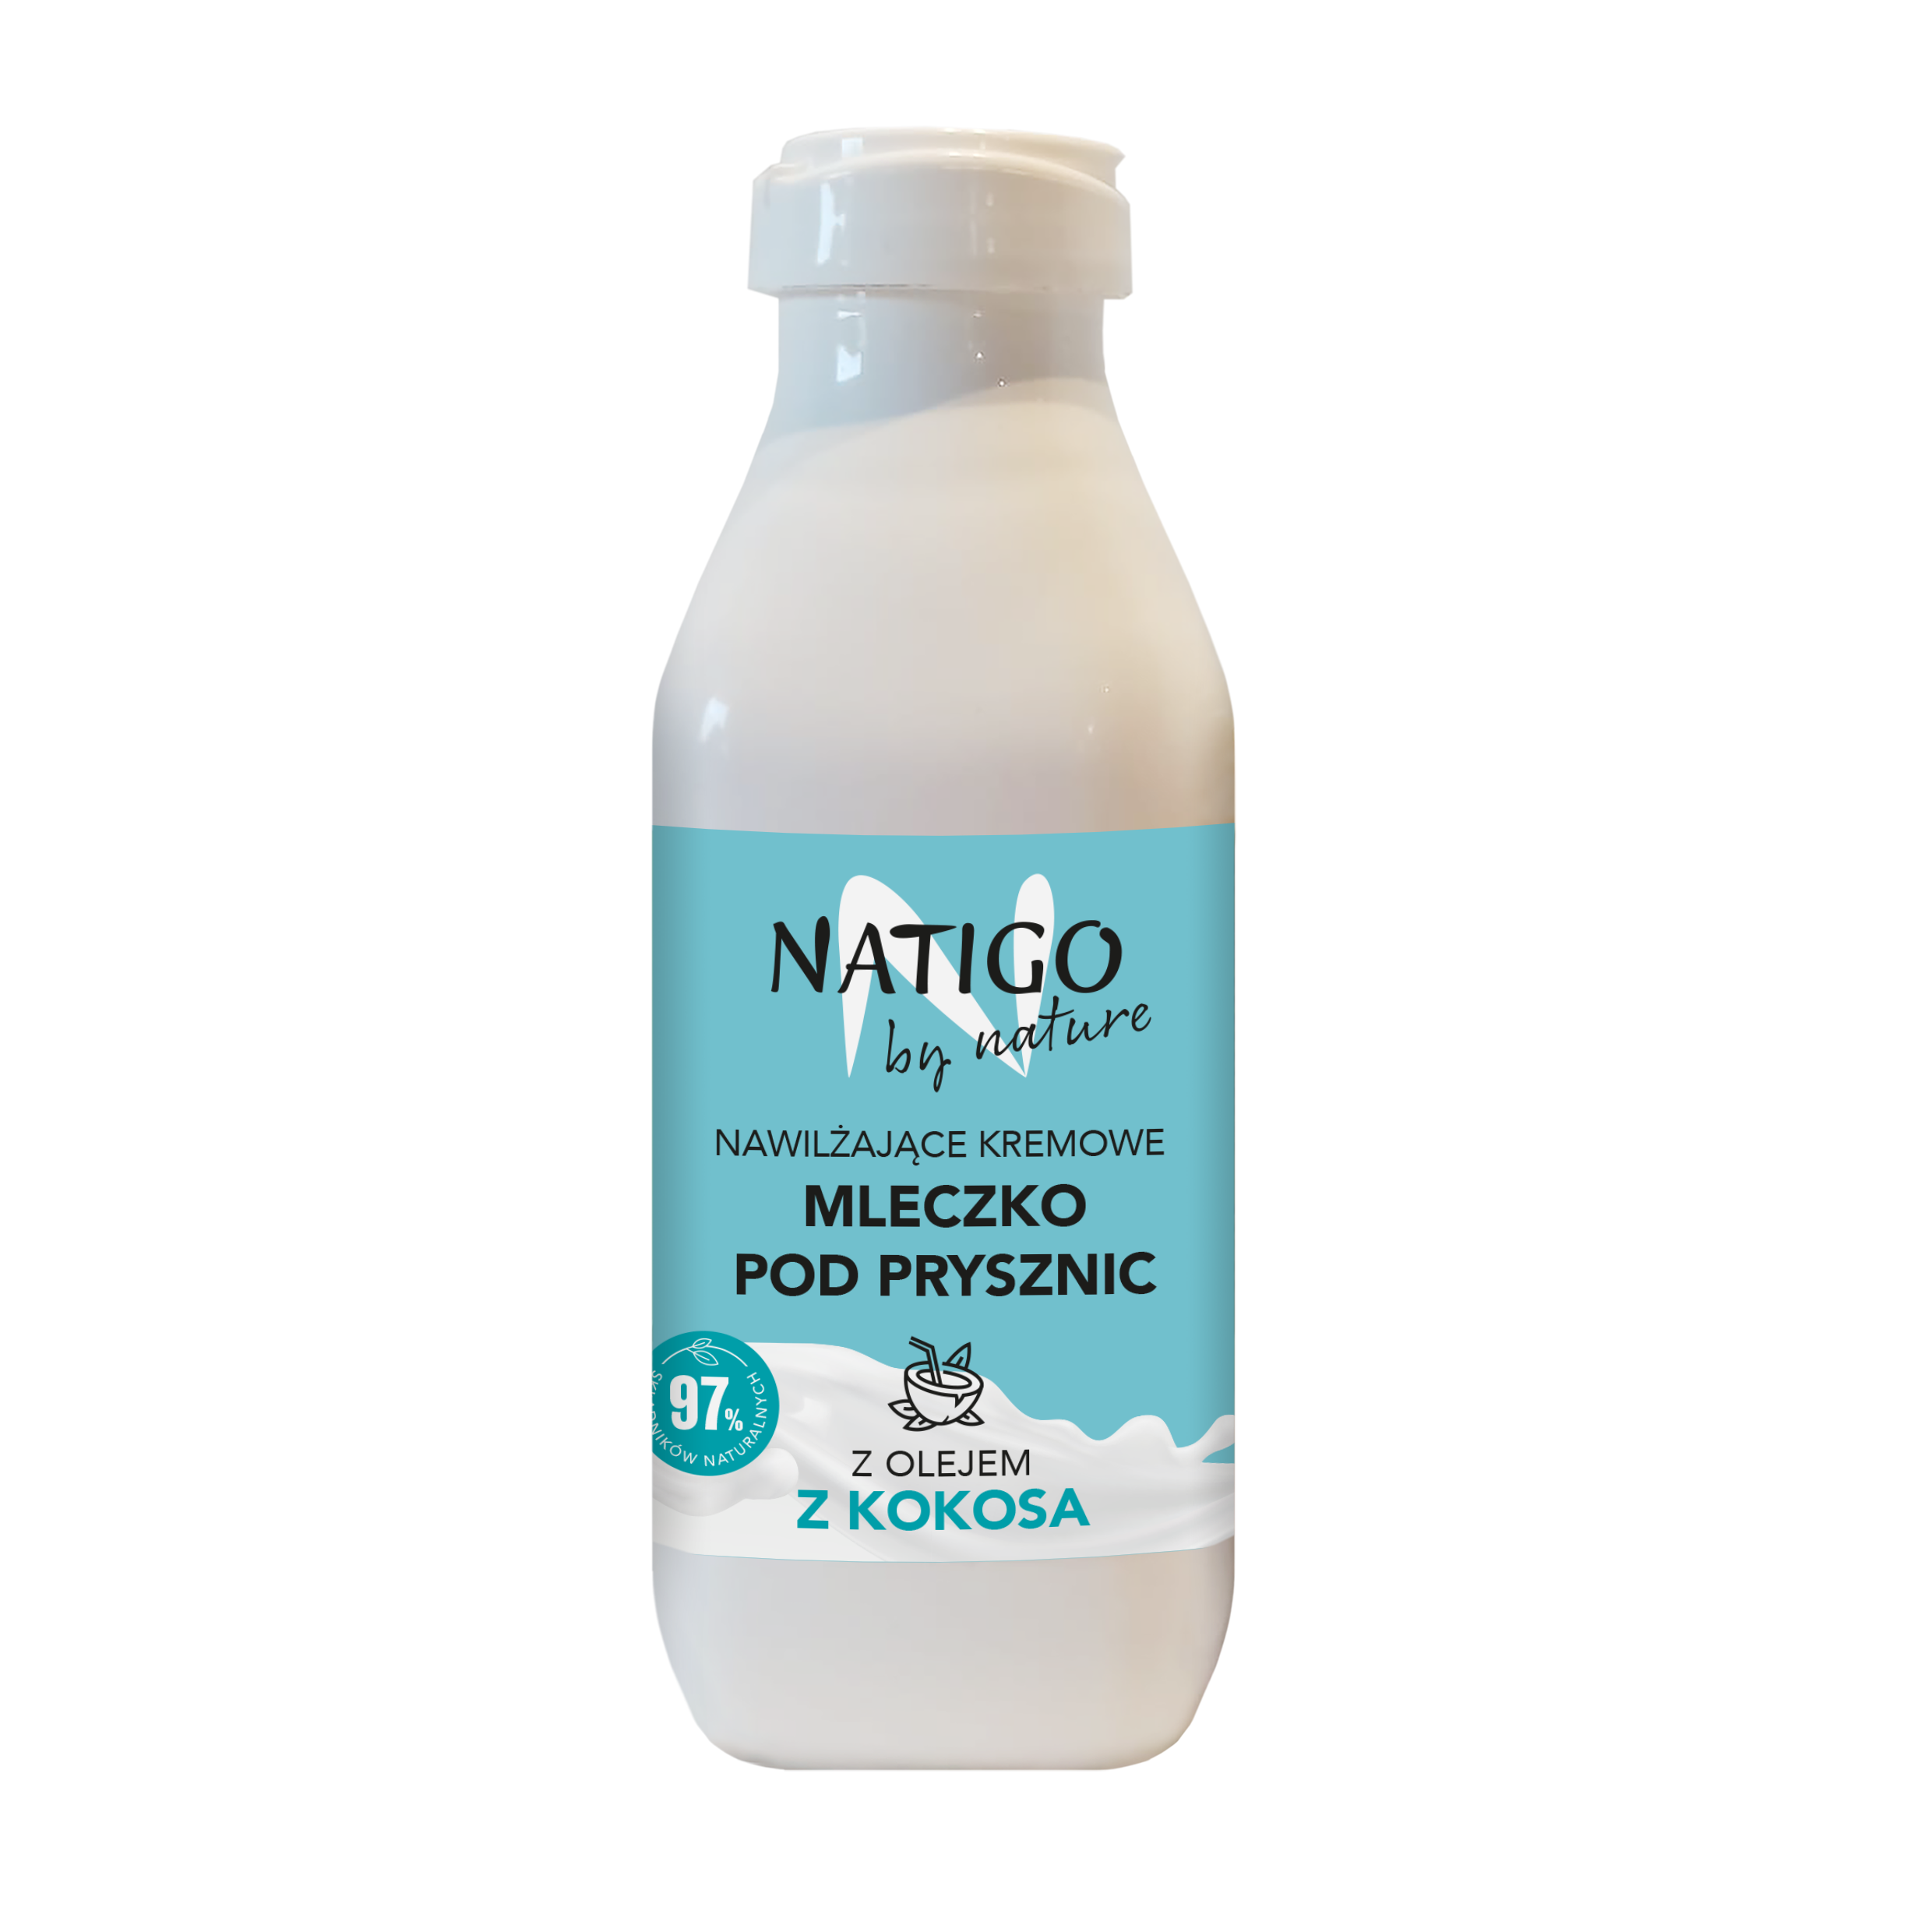 Увлажняющее сливочное молочко для душа с кокосовым маслом Natigo By Nature, 400 мл масло сливочное козье 82 5% 150 г